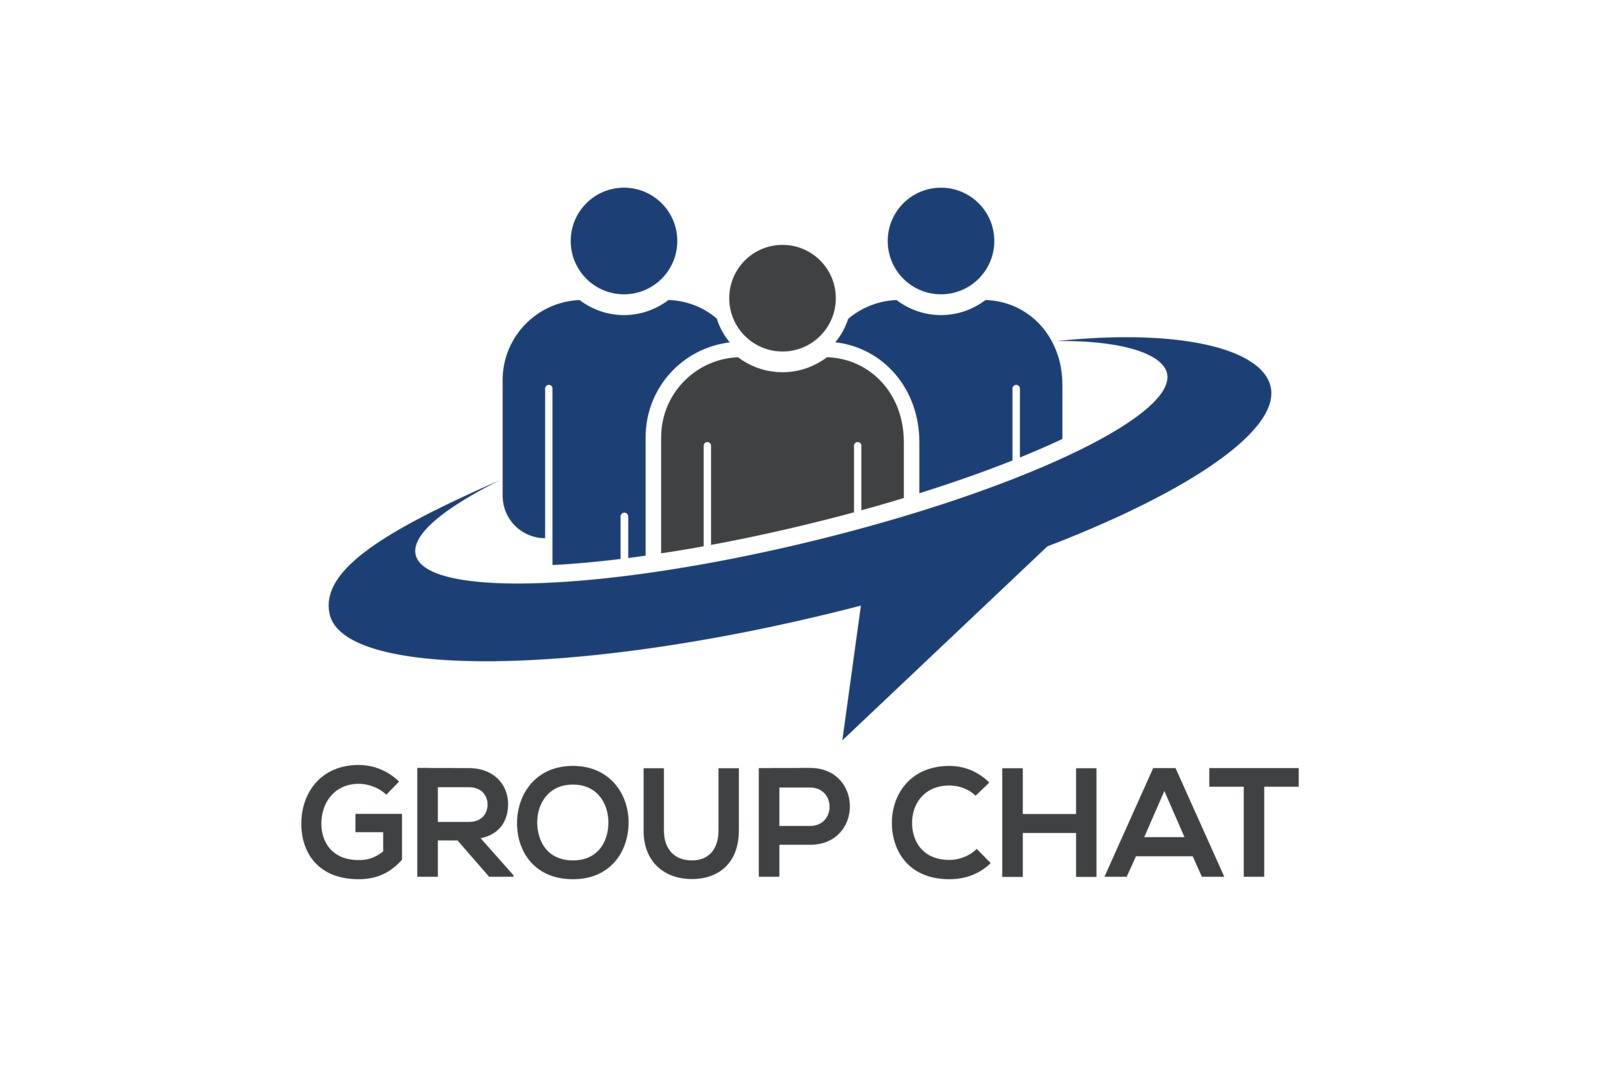 Group Chat logo symbol, People logo by busrat